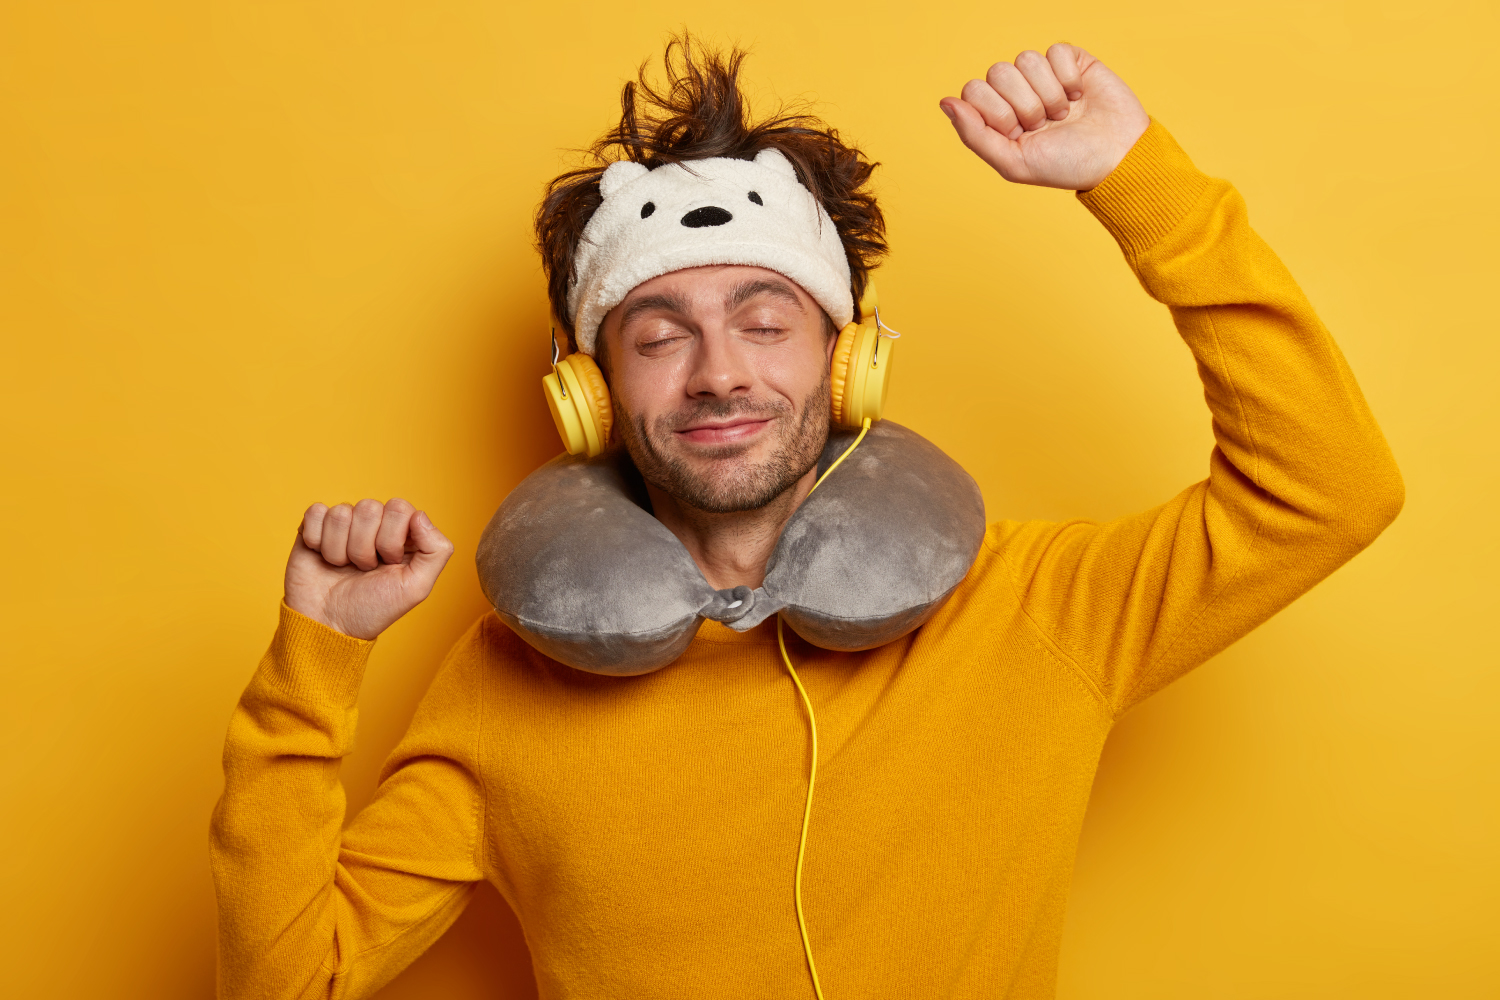 ilustrasi seorang laki-laki sedang menggunakan pillow neck dan masker mata. Serta sedang mendengarkan musik melalui headphone.